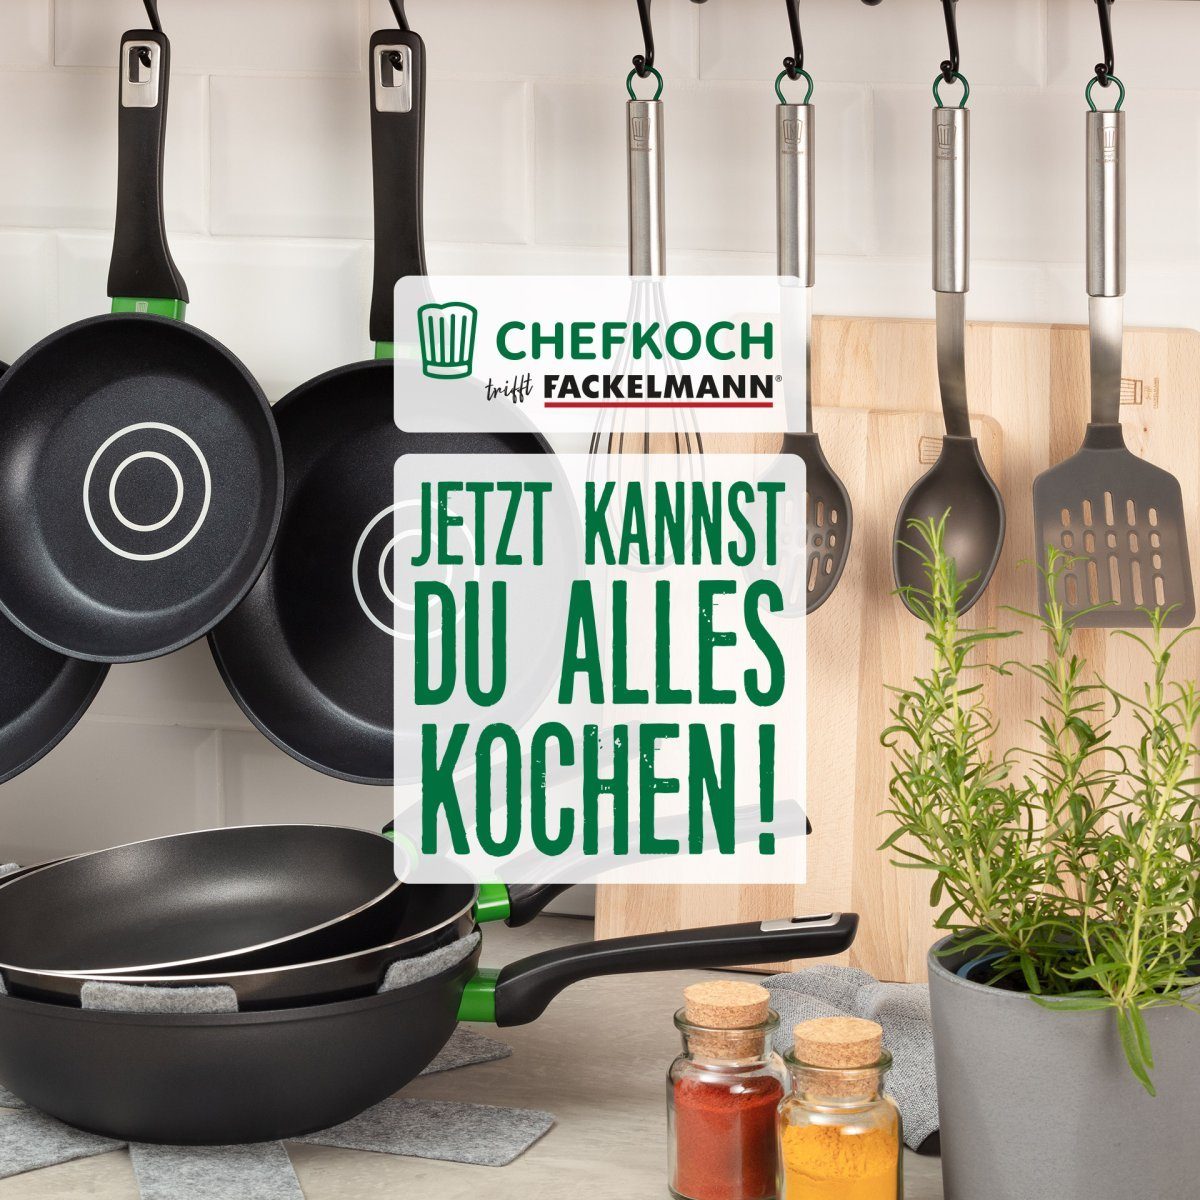 Kochbesteck-Set Fackelmann Chefkoch München trifft